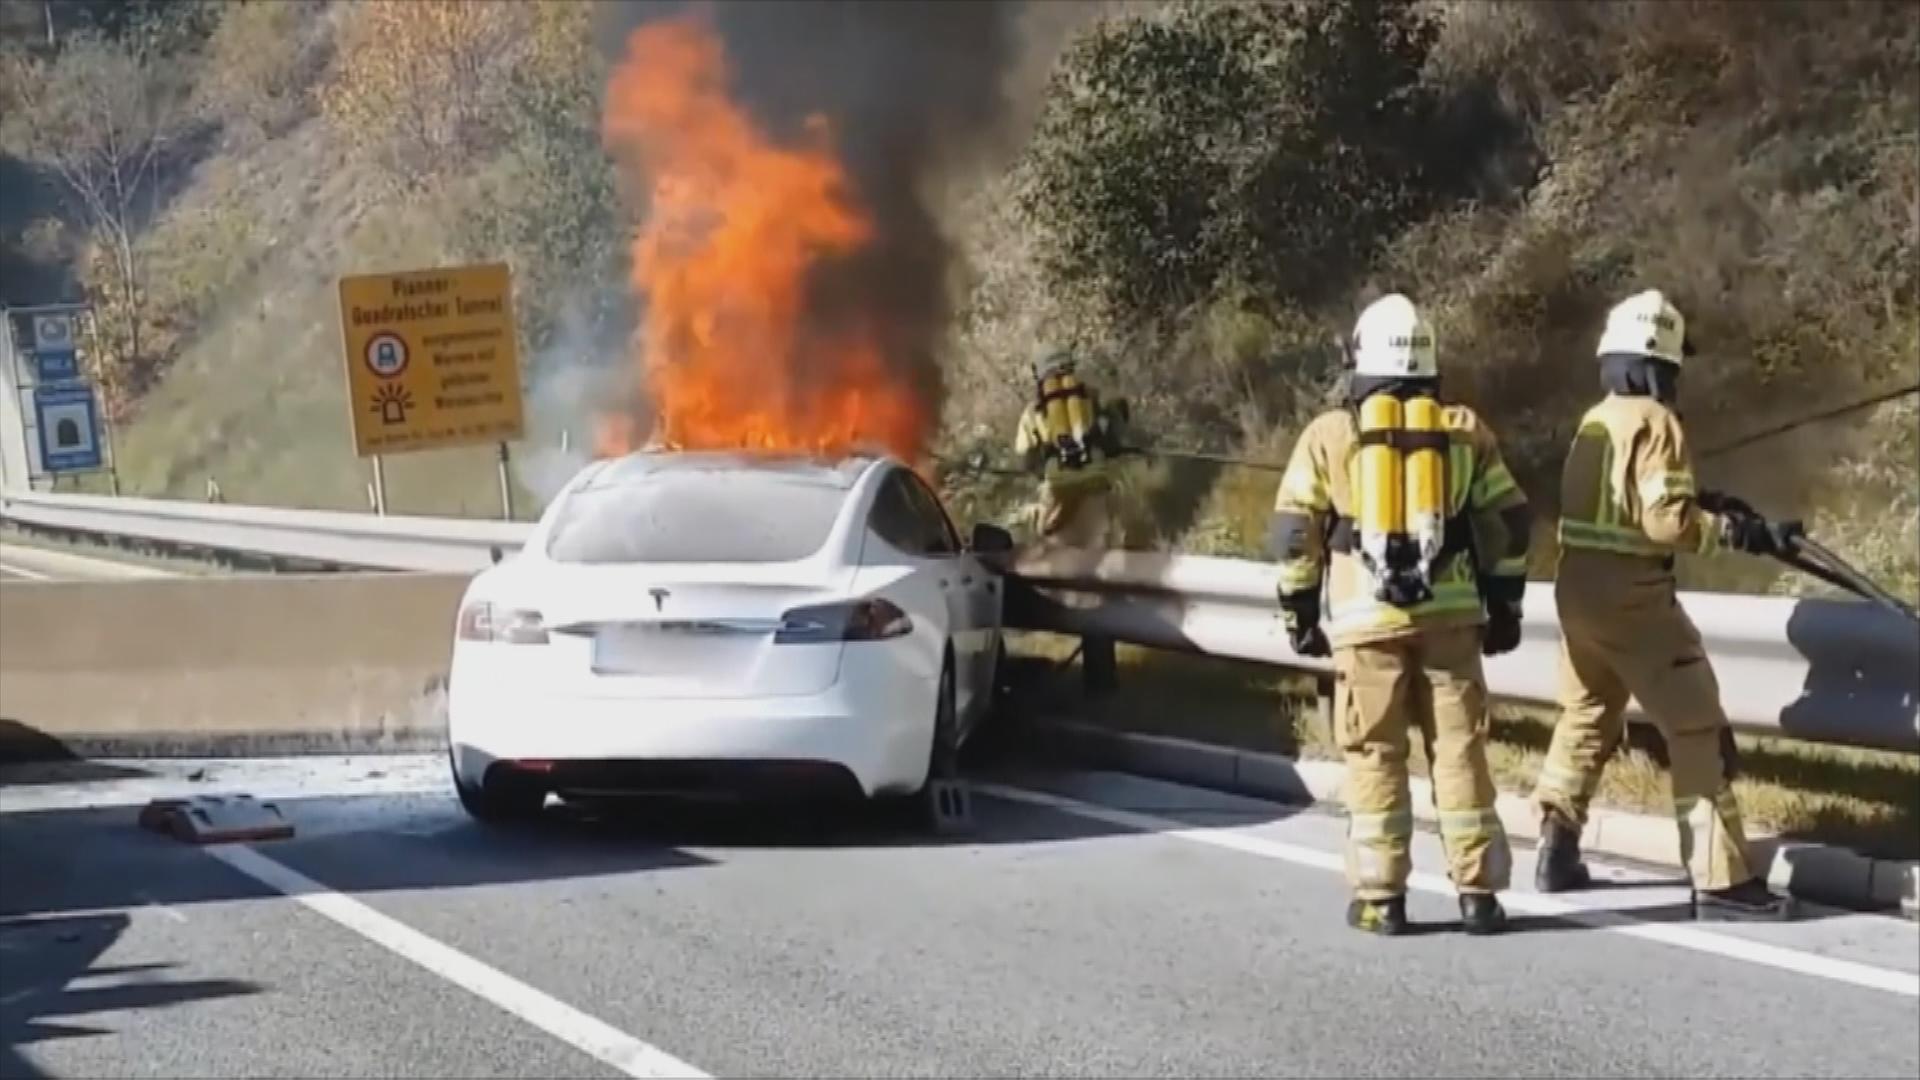 Brennendes Elektro Auto auf der Straße und Feuerwehr bei Löscharbeiten